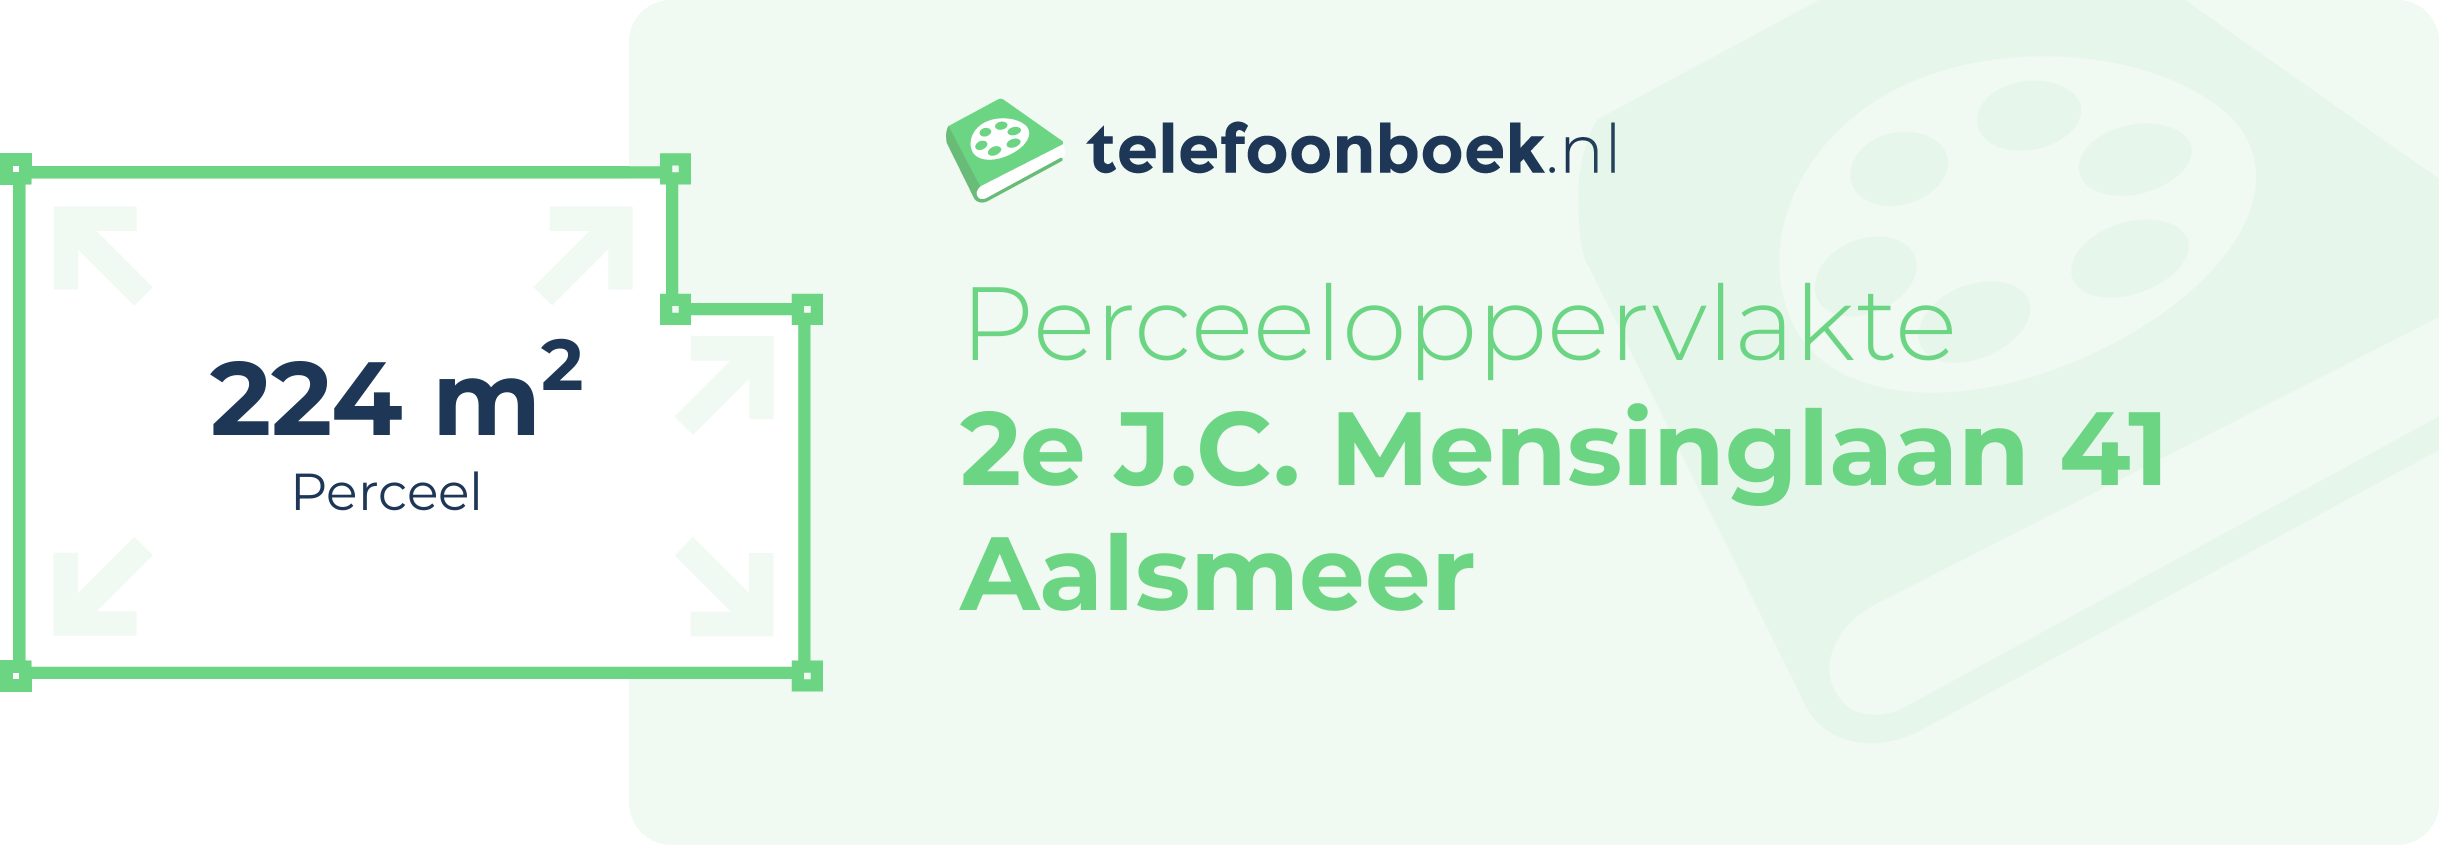 Perceeloppervlakte 2e J.C. Mensinglaan 41 Aalsmeer